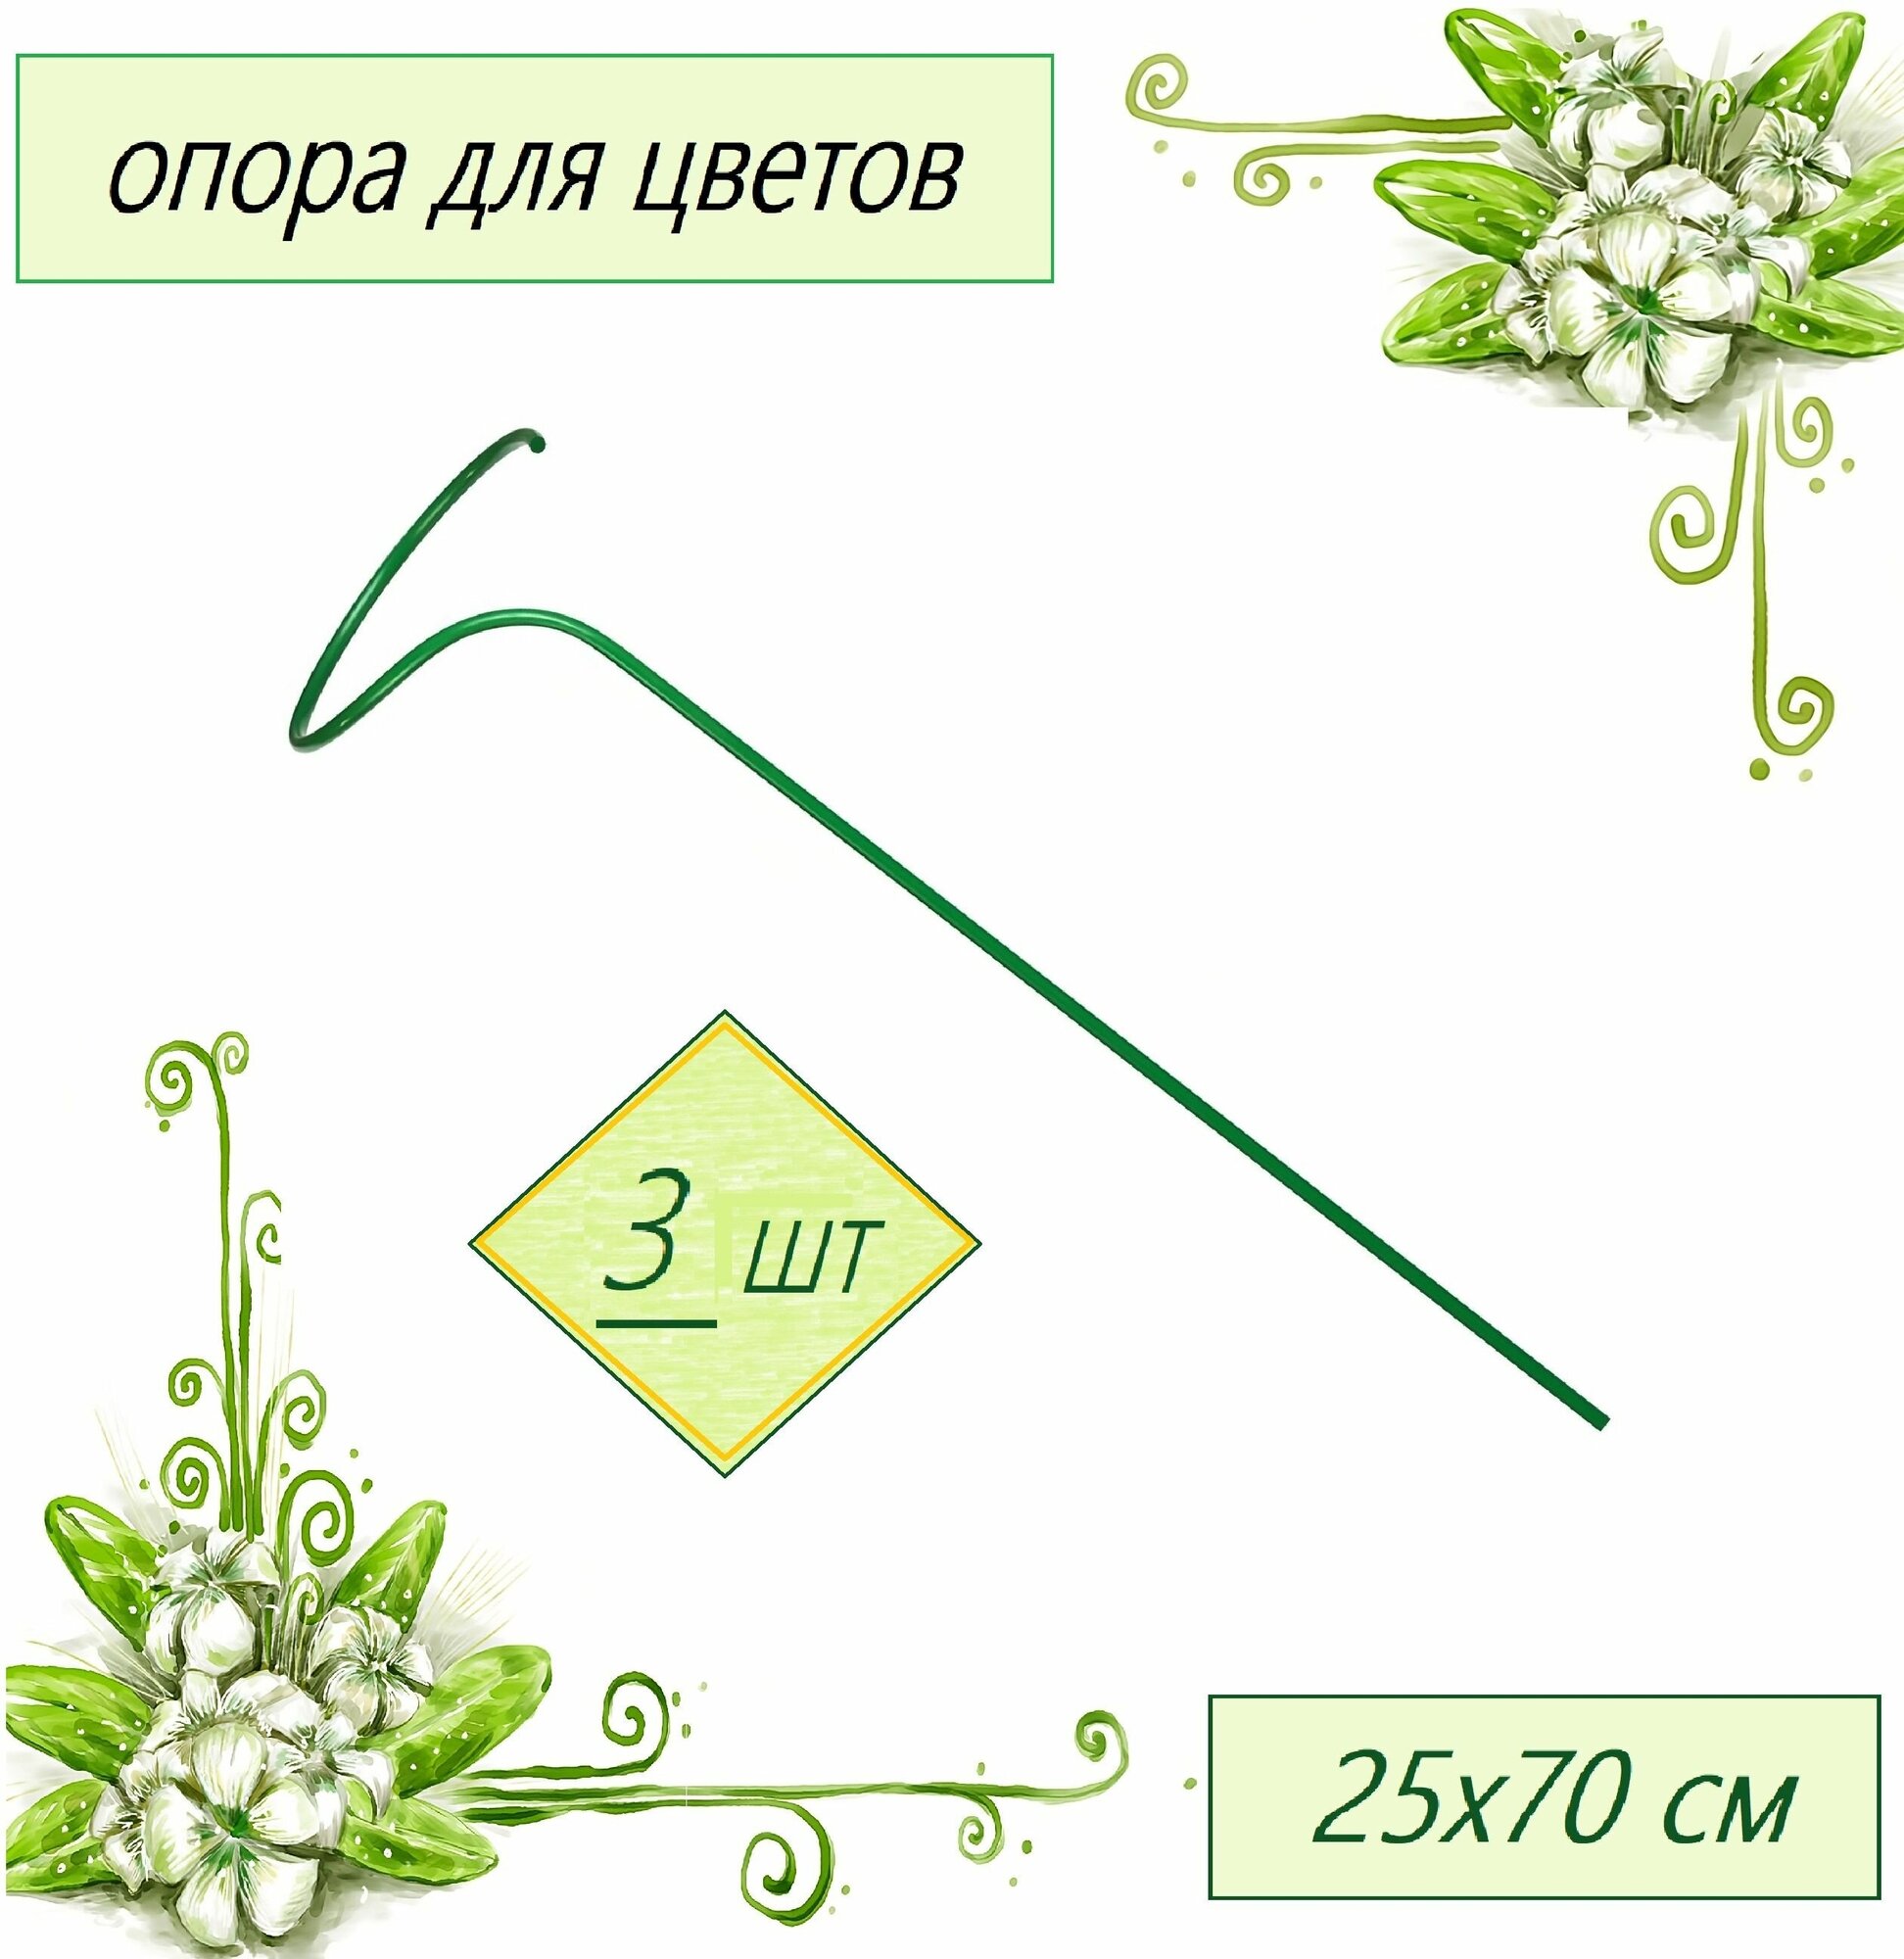 Опора для цветов малая 3 шт (d 0.25 м h 0.7 м) стальная труба d 10 мм в оболочке ПВХ. Для бережной фиксации декоративных и плодовых кустарников